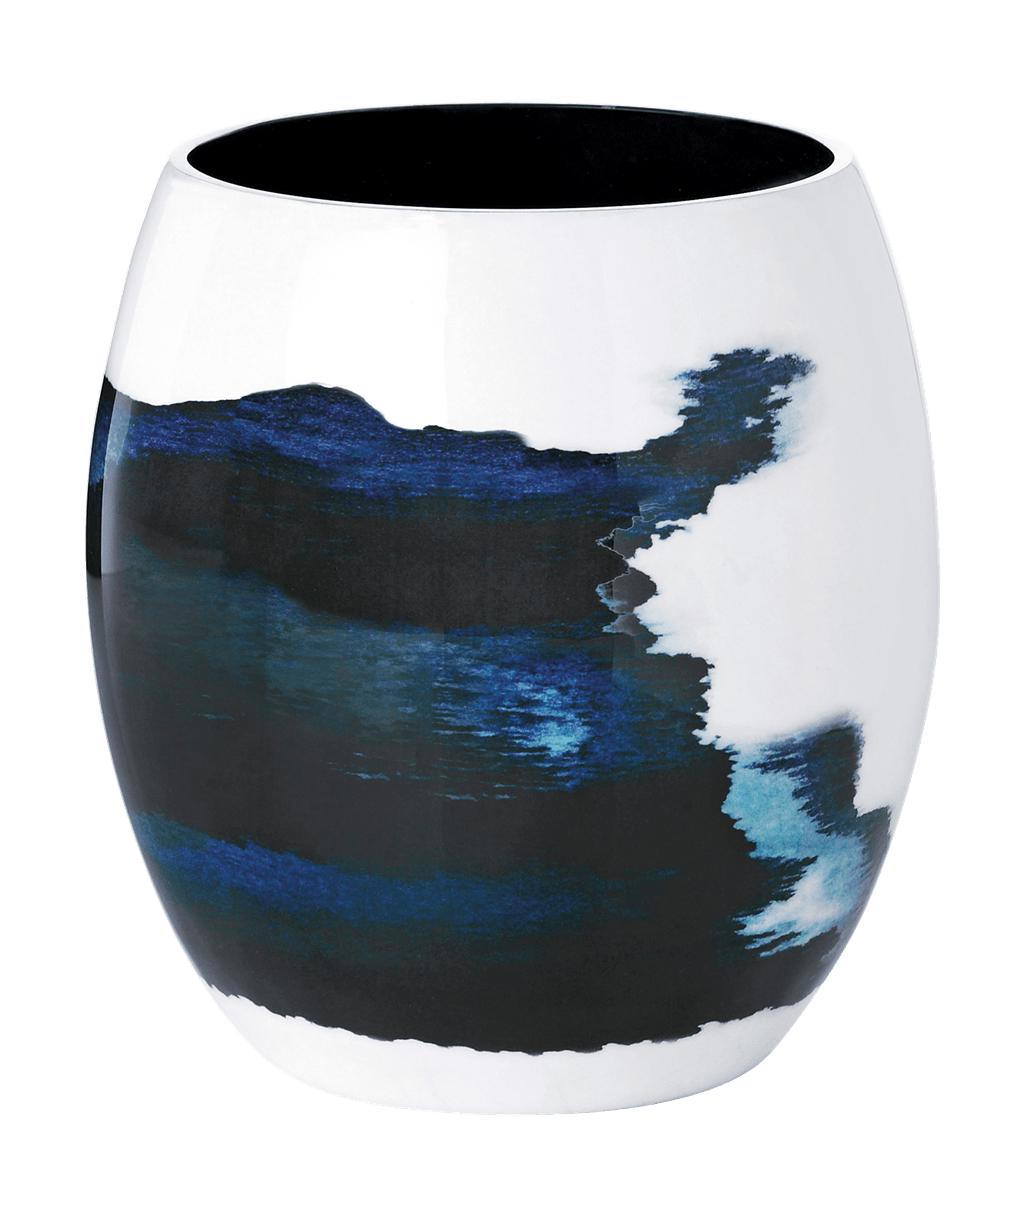 Stelton Stockholm Vase 15,7 Cm, Aquatic